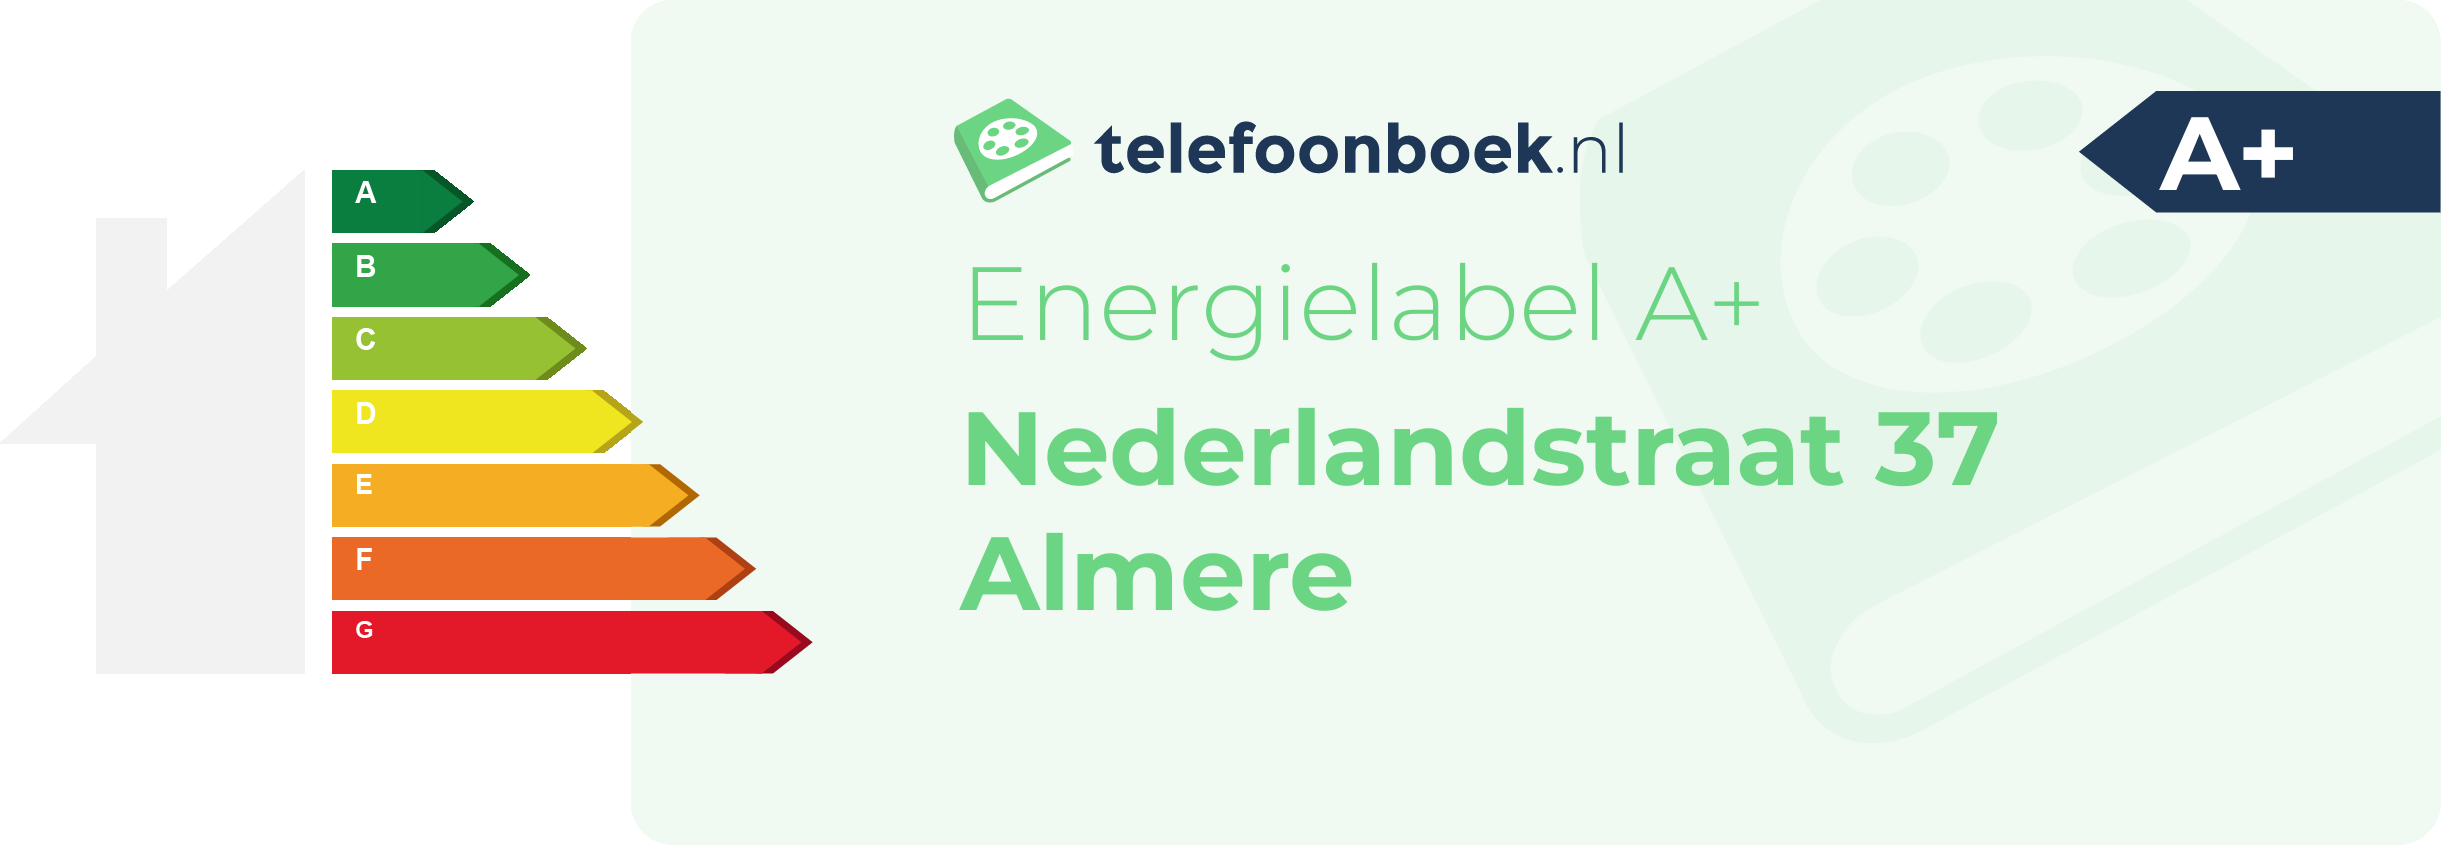 Energielabel Nederlandstraat 37 Almere